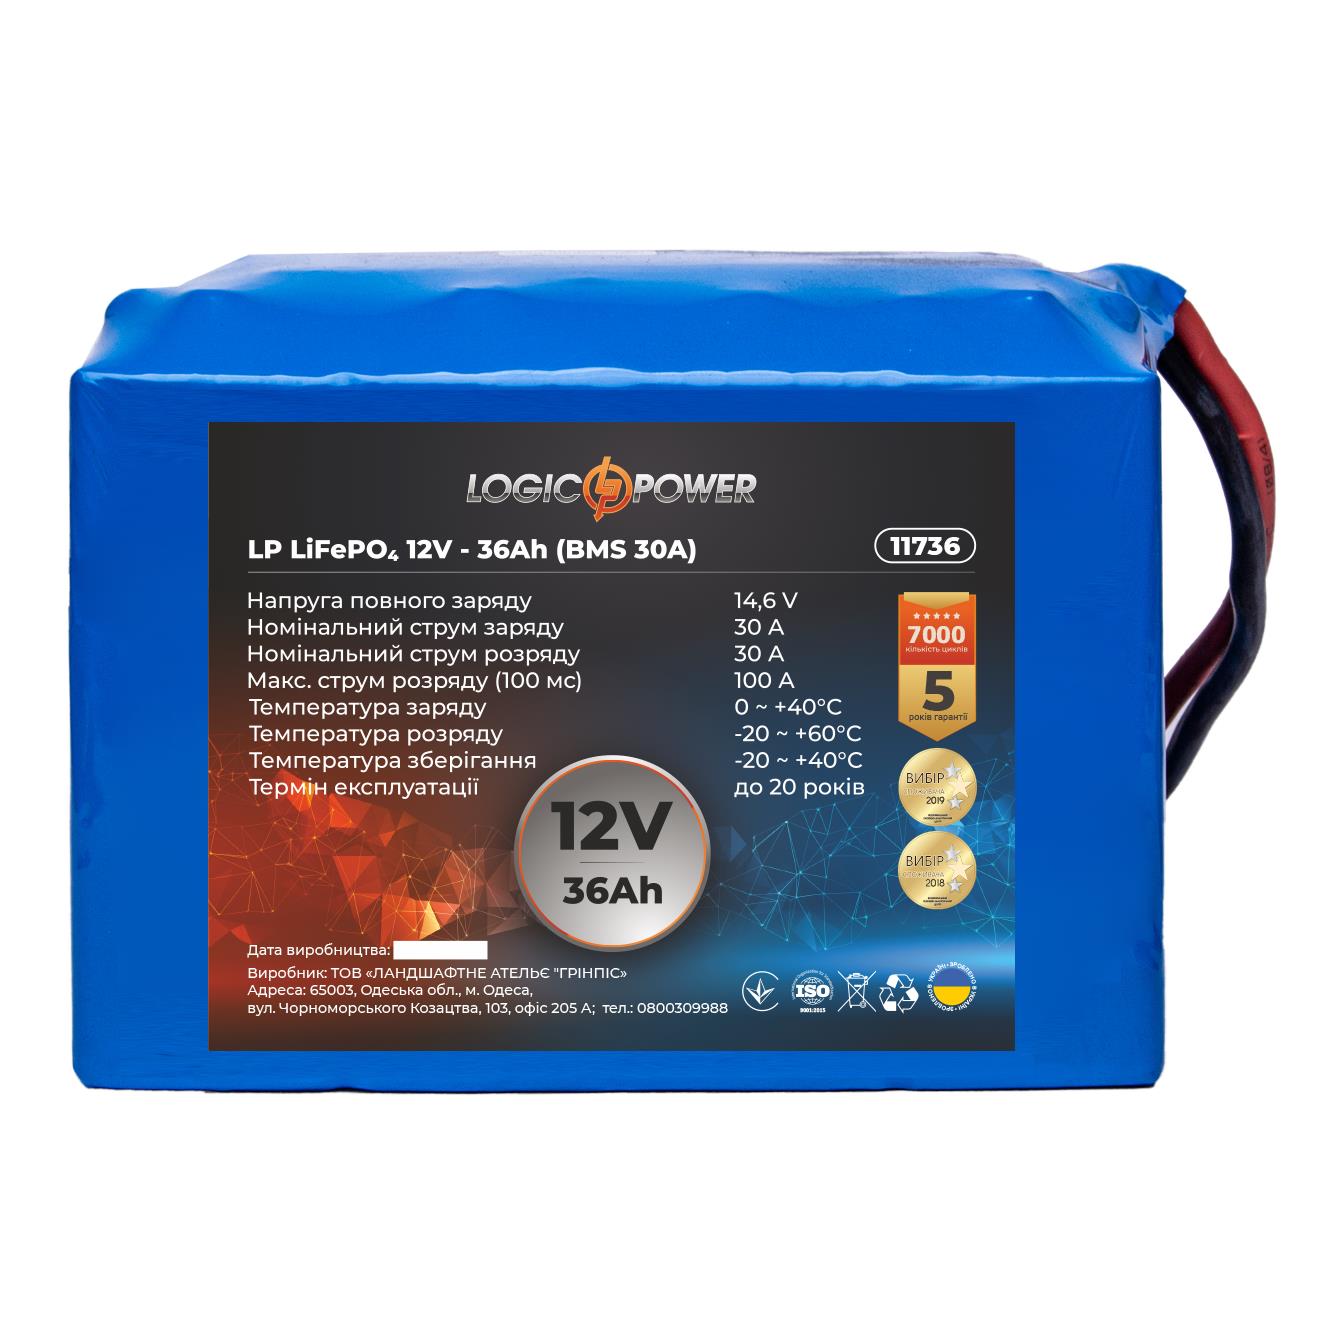 Аккумулятор литий-железо-фосфатный LogicPower LP LiFePO4 12V - 36 Ah (BMS 30A) (11736) в интернет-магазине, главное фото